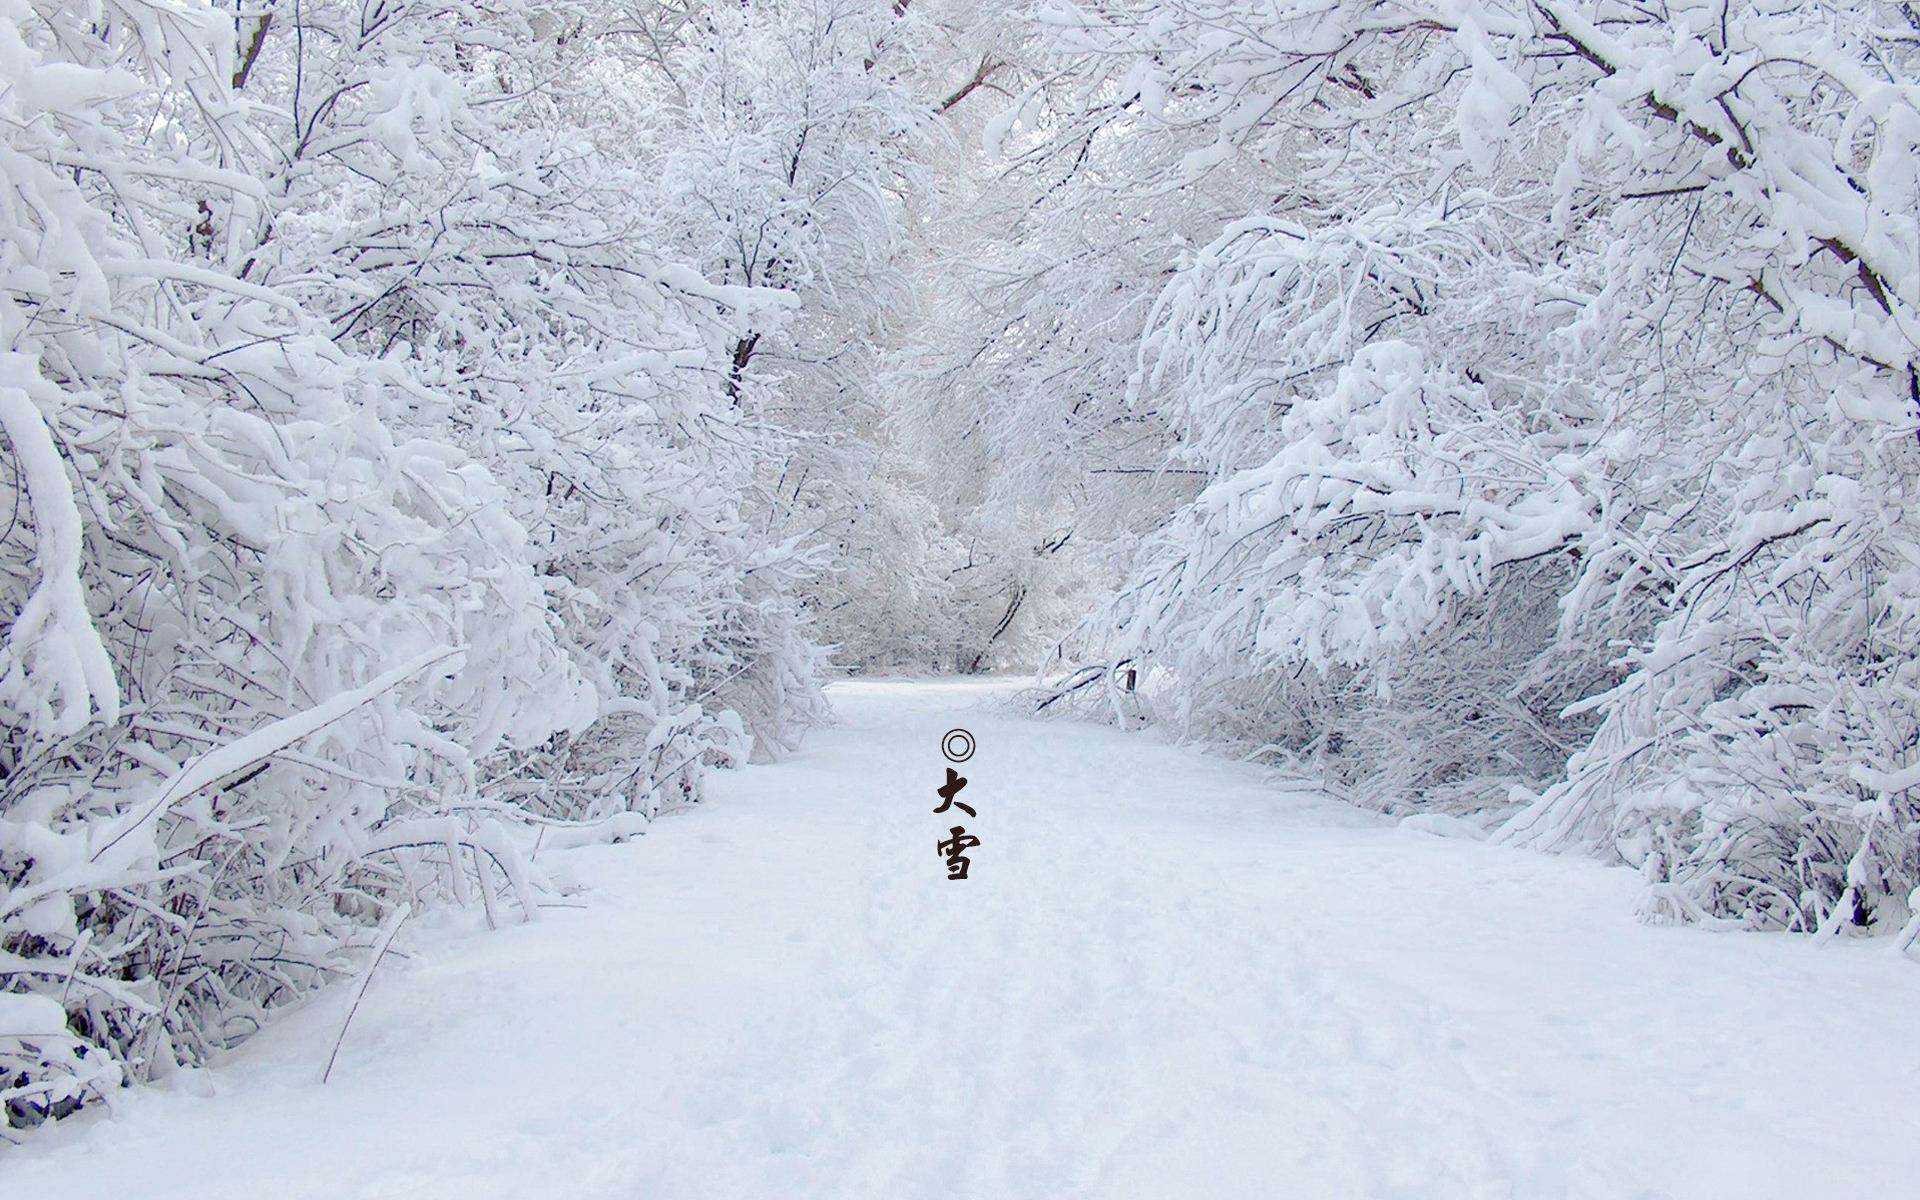 在大雪中做雪天使的女人 冬日 库存图片. 图片 包括有 子项, 人员, 快乐, 人们, 休闲, 衣物, 外套 - 164113949